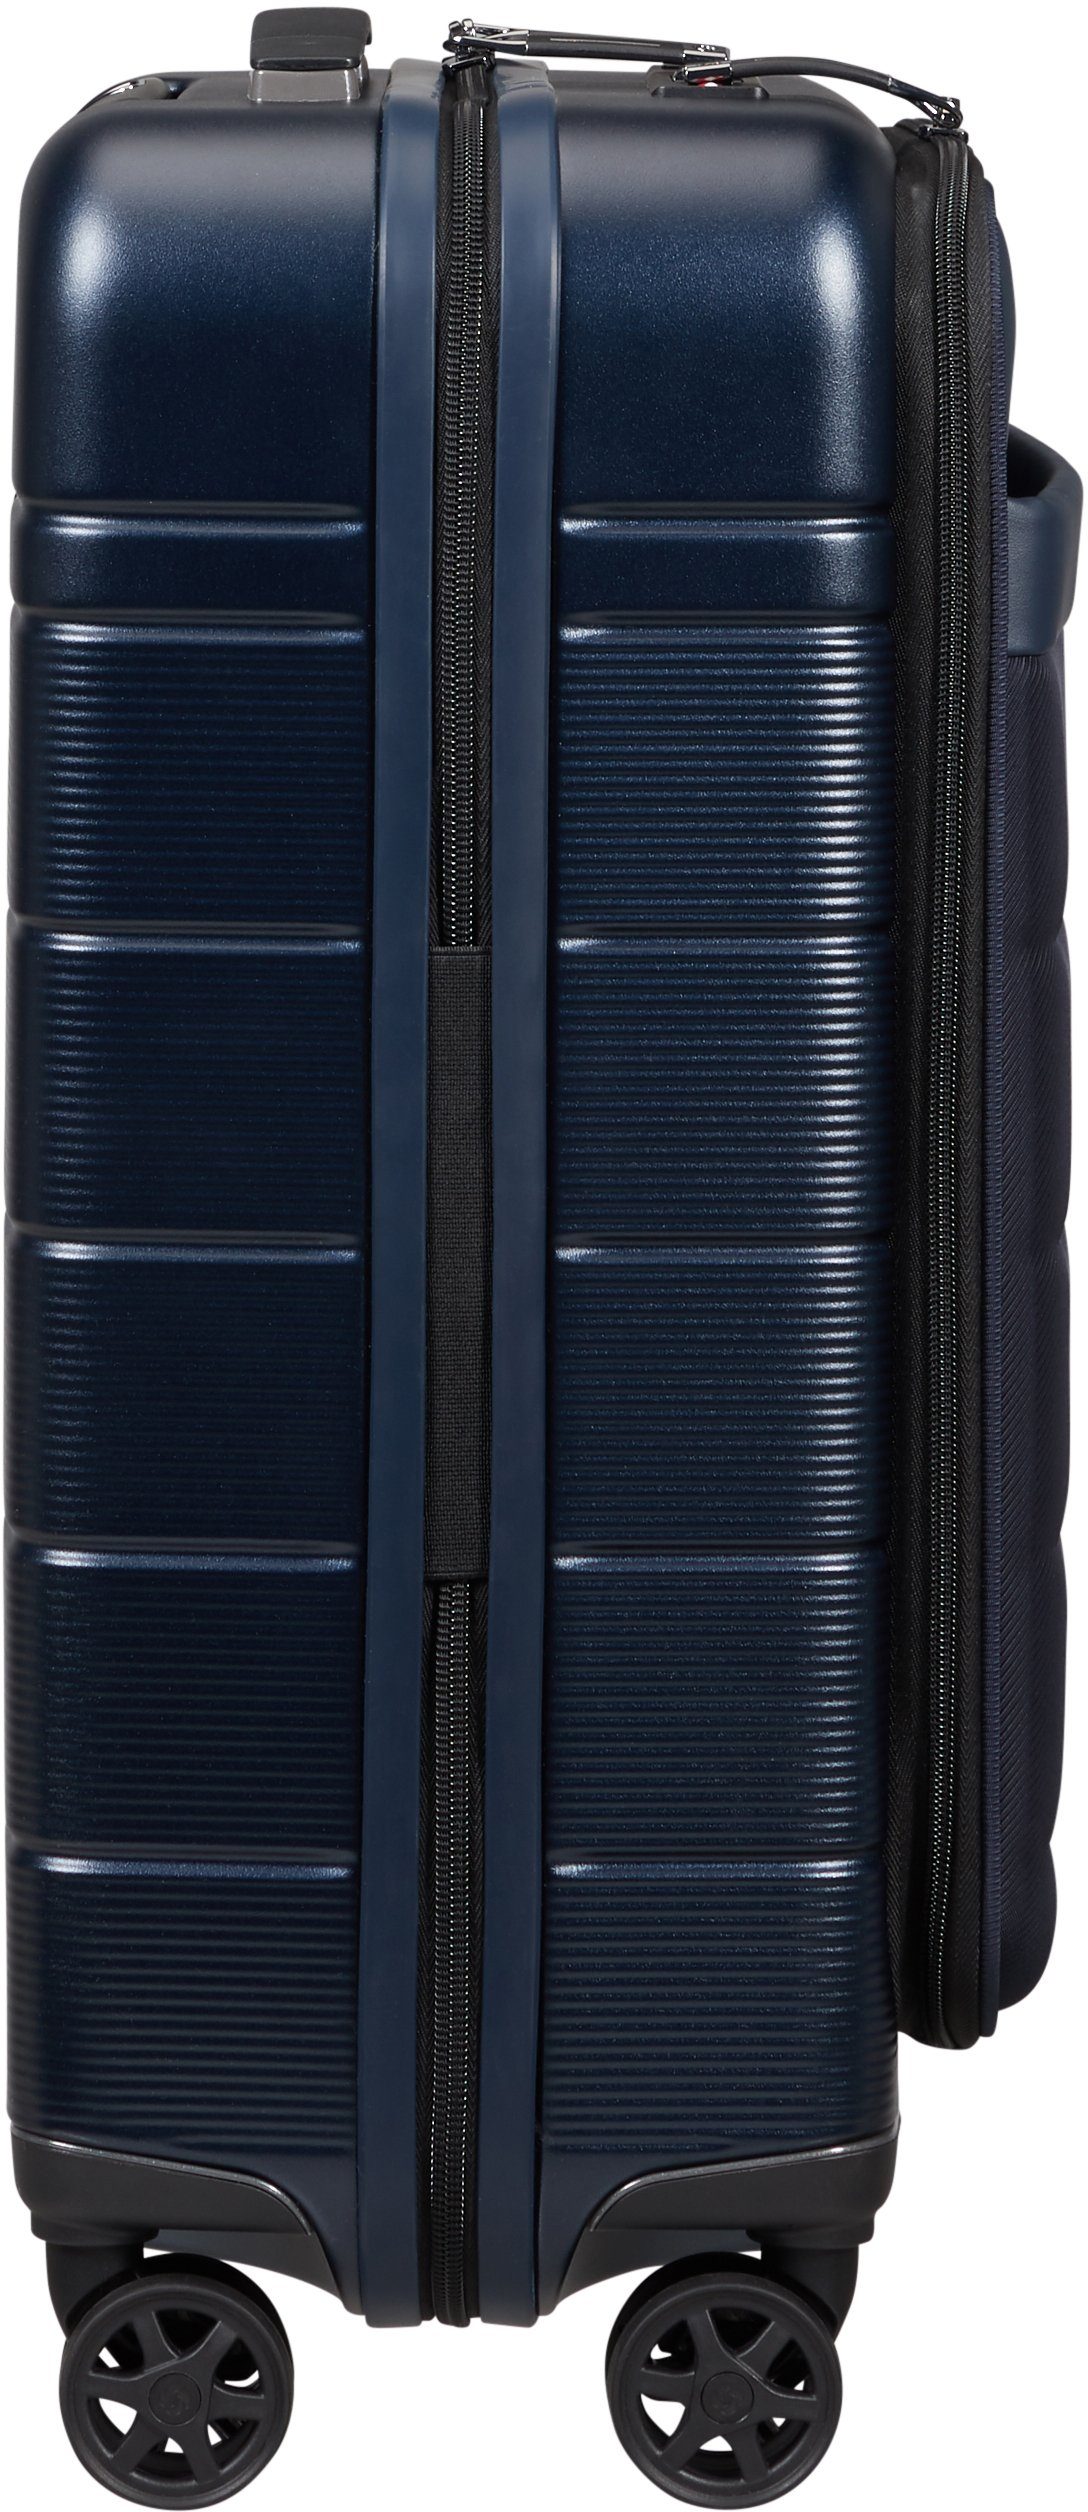 USB-Schleuse Neopod, Samsonite 55 cm, Blue 4 Midnight mit Rollen, Hartschalen-Trolley und Volumenerweiterung